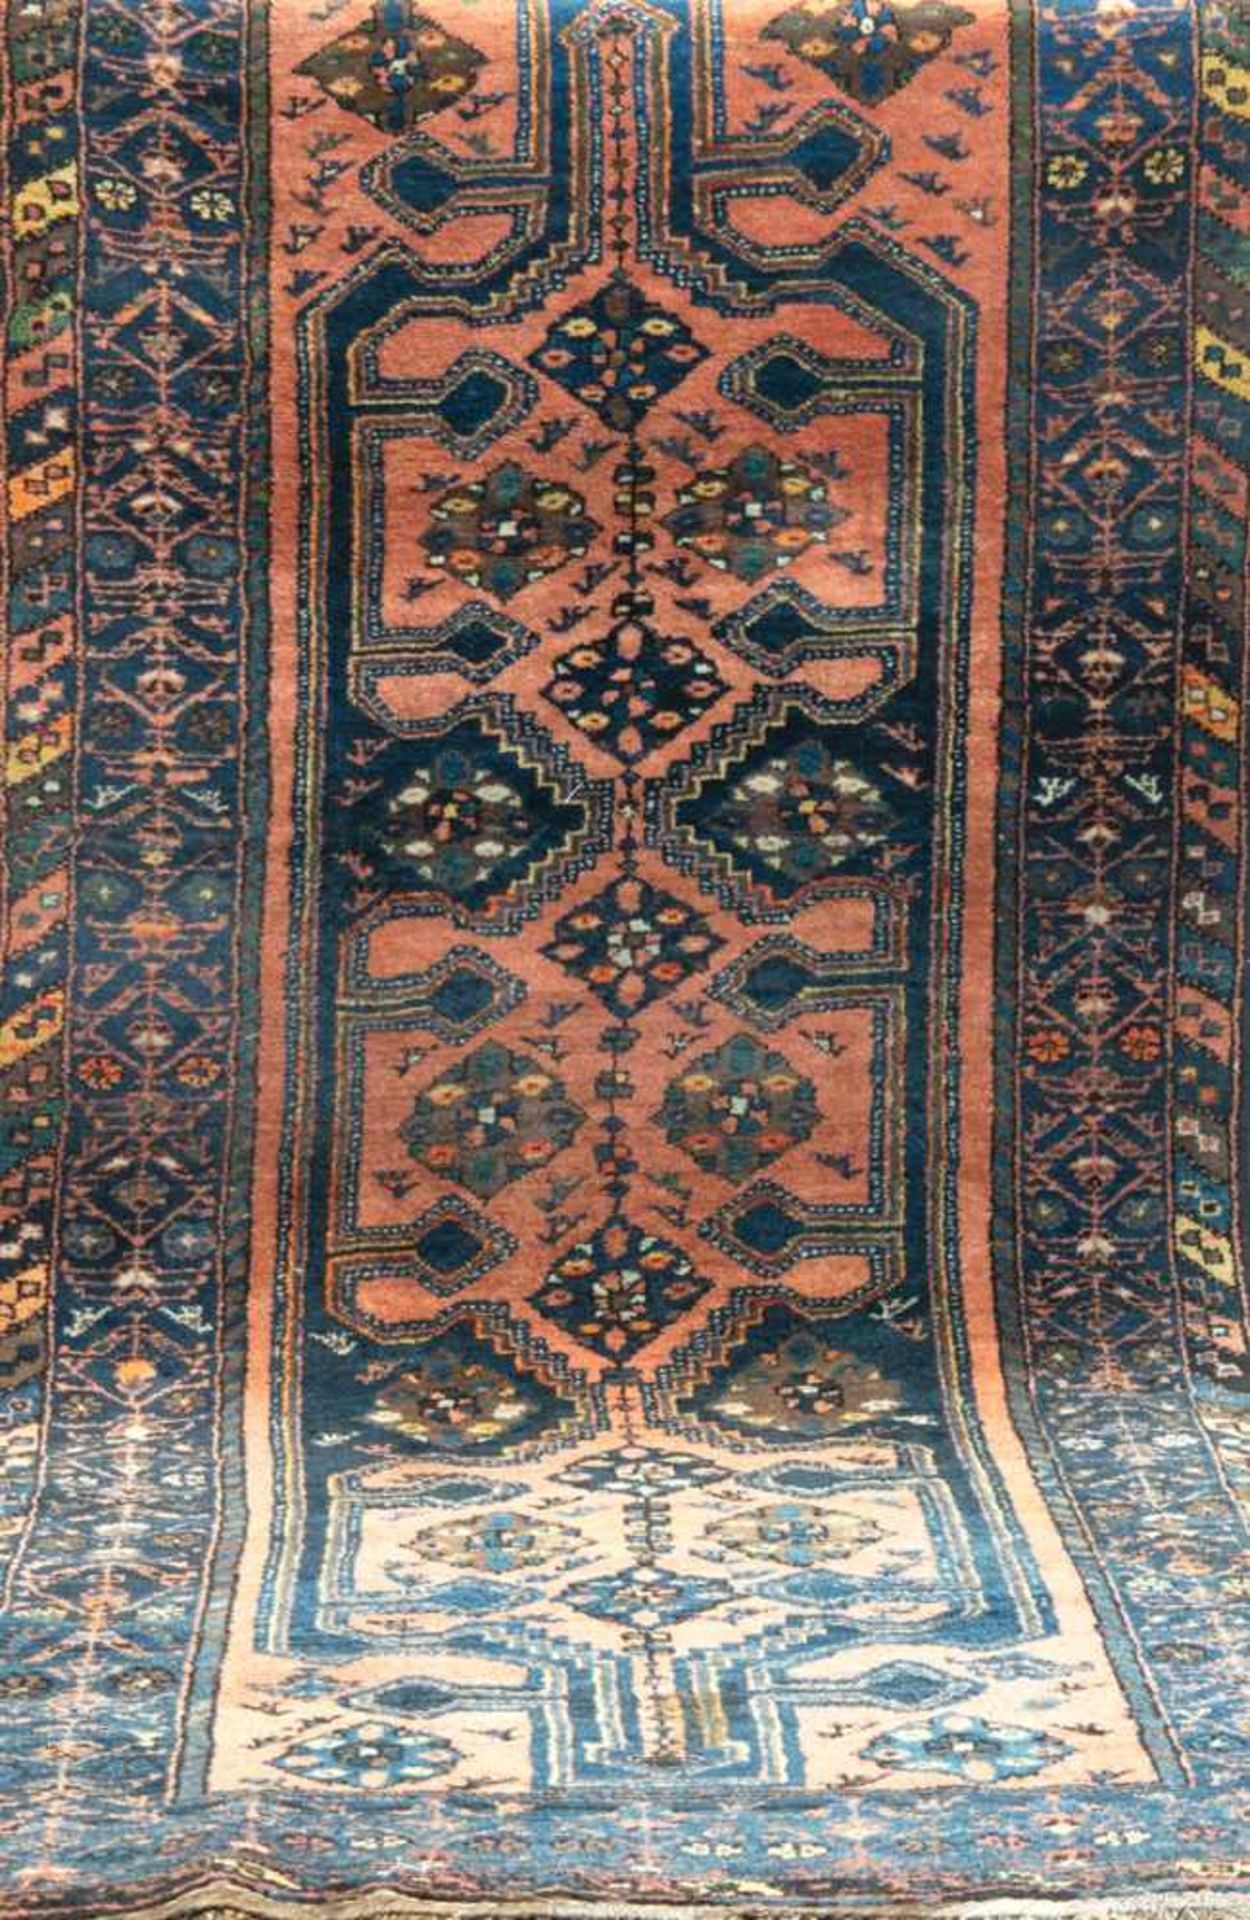 Teppich, rot-/blaugrundig, durchgehendes Muster mit Tier- und Floralmotiven, alle Kantenbelaufen,